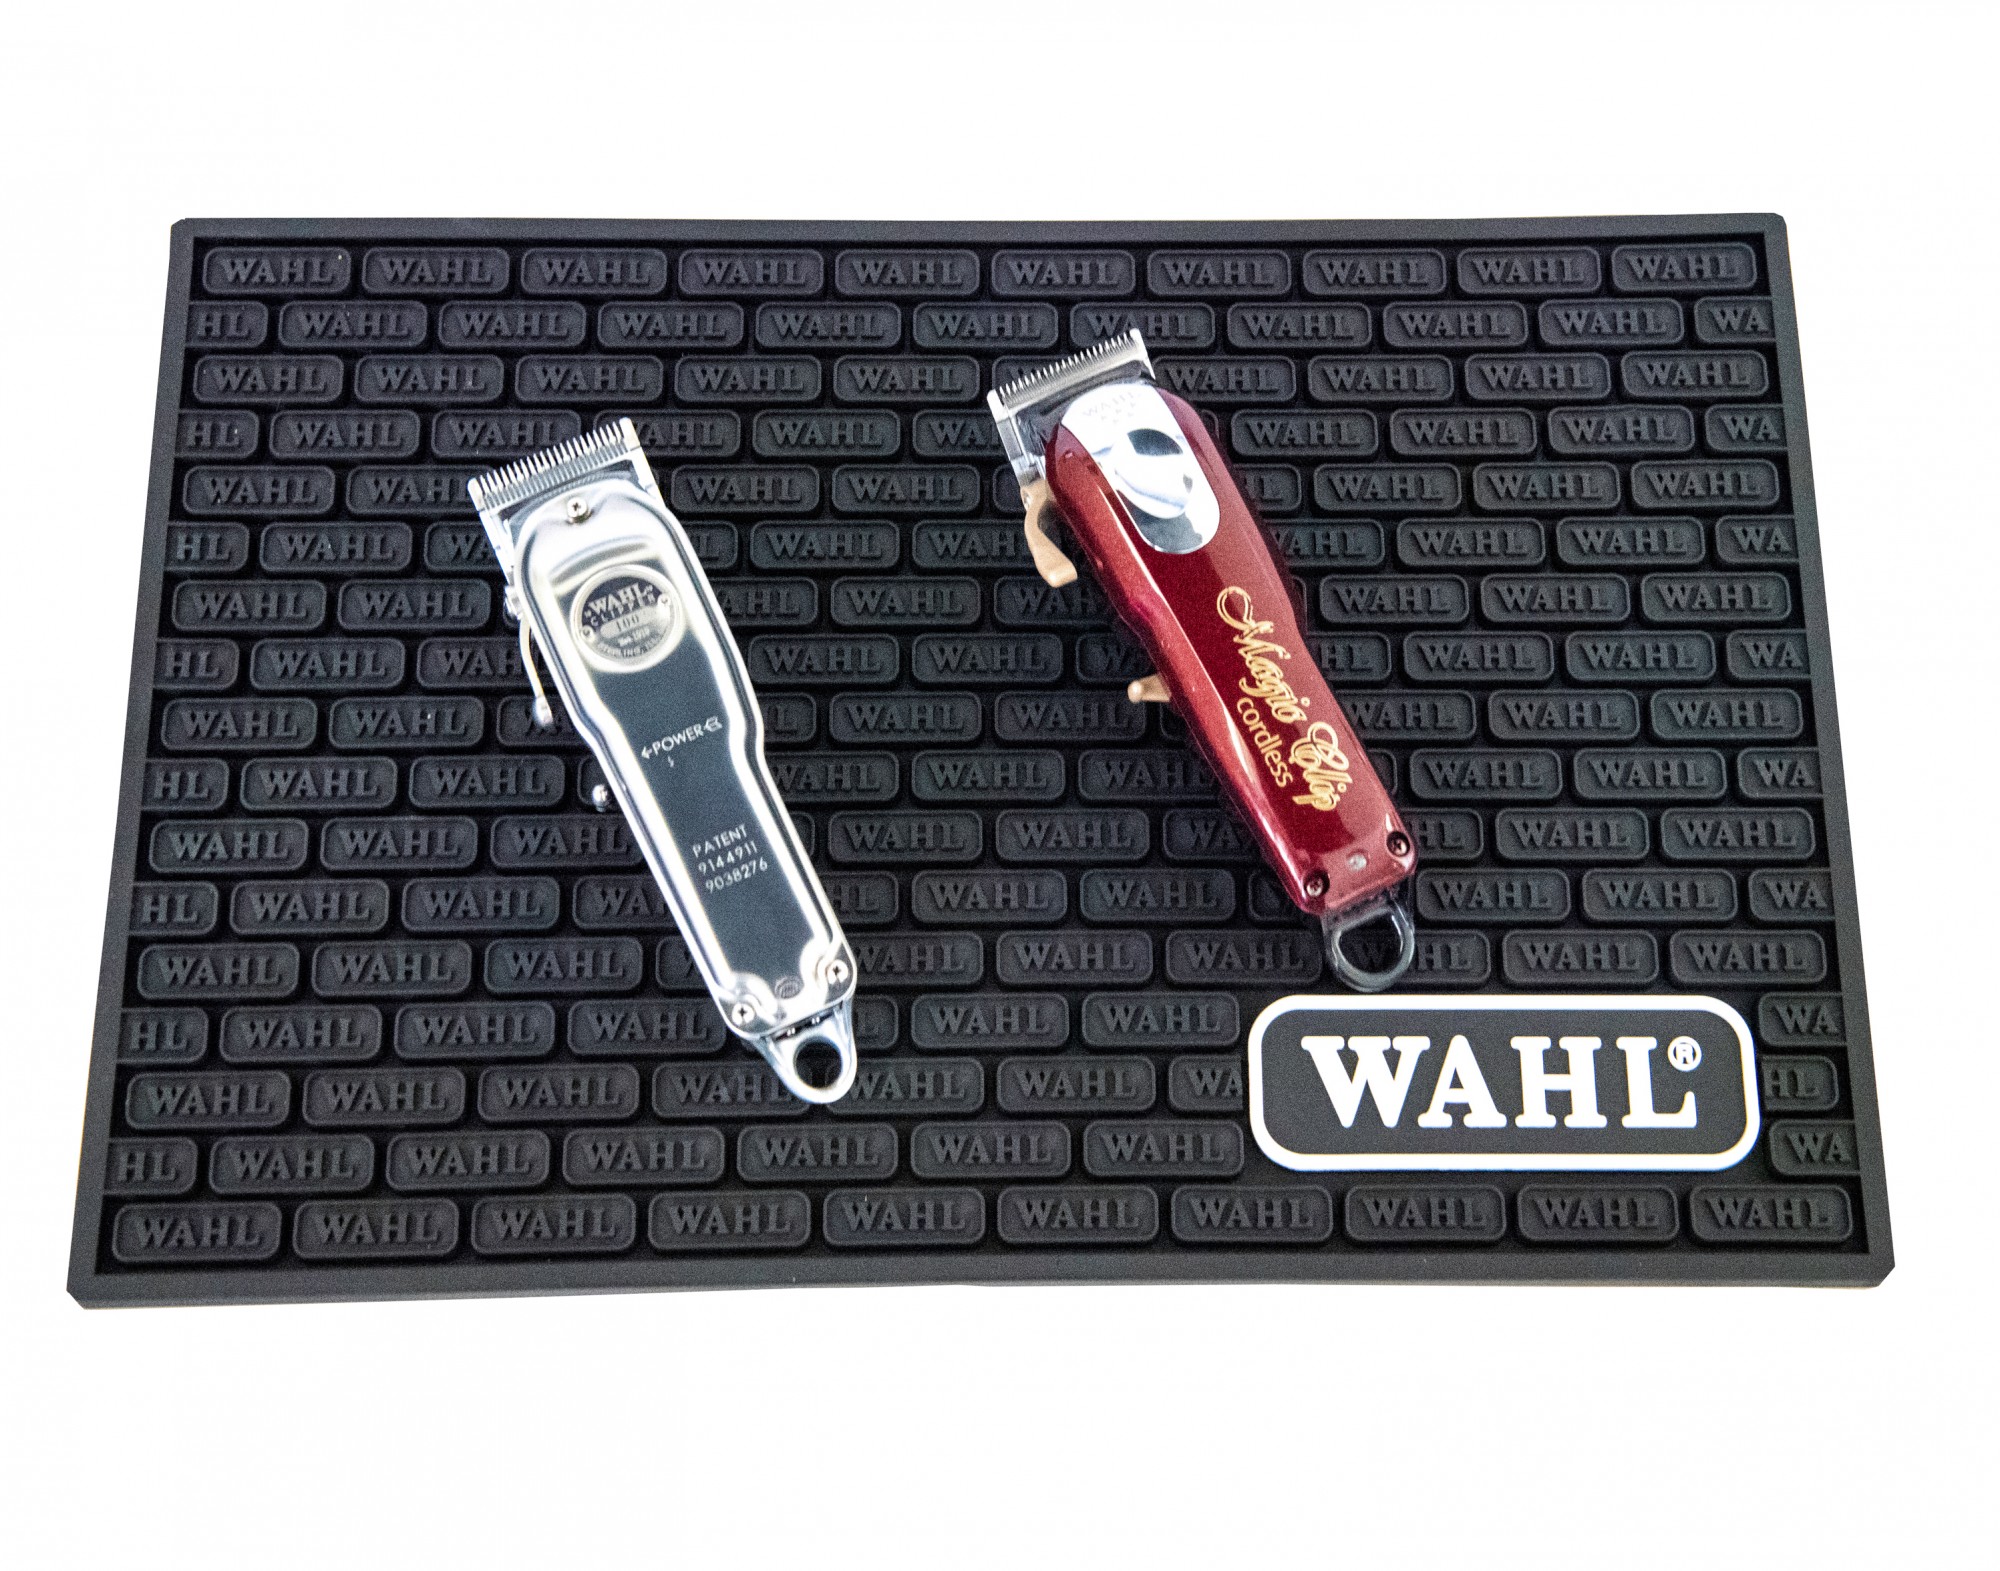 Pracovní podložka WAHL 0093-6410 Barber Tool Mat 1